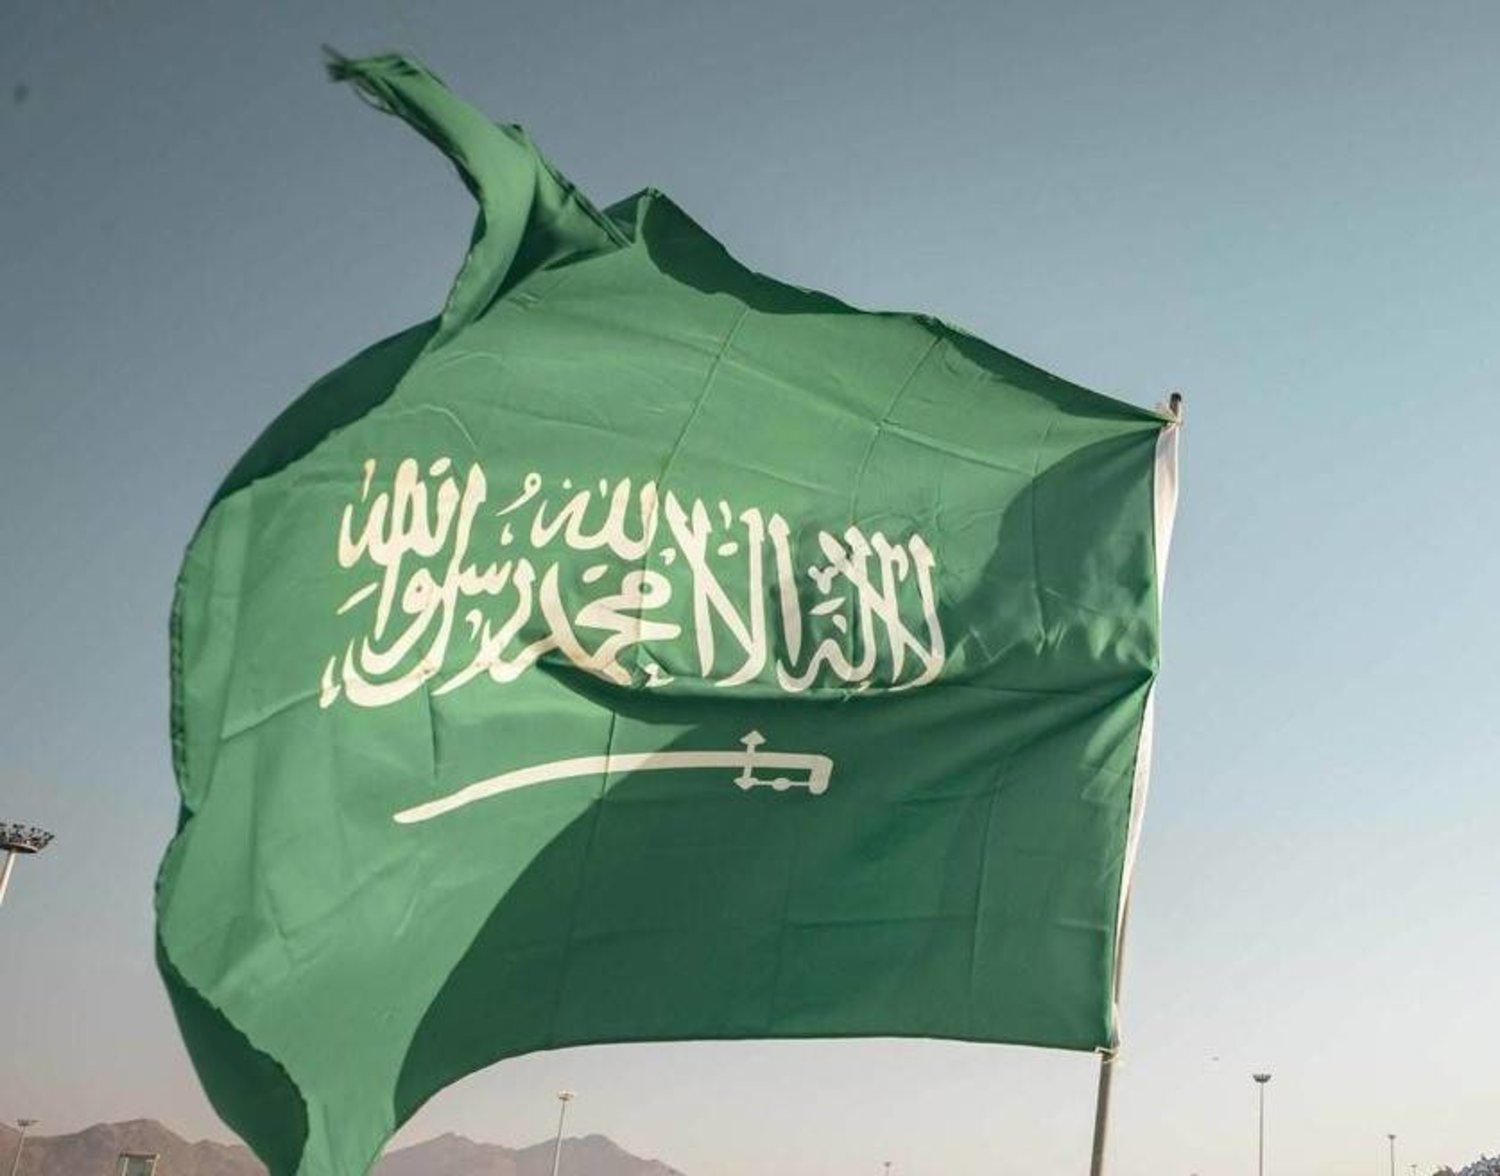 السعودية تستدعي القائم بالأعمال السويدي للاحتجاج على تدنيس القرآن